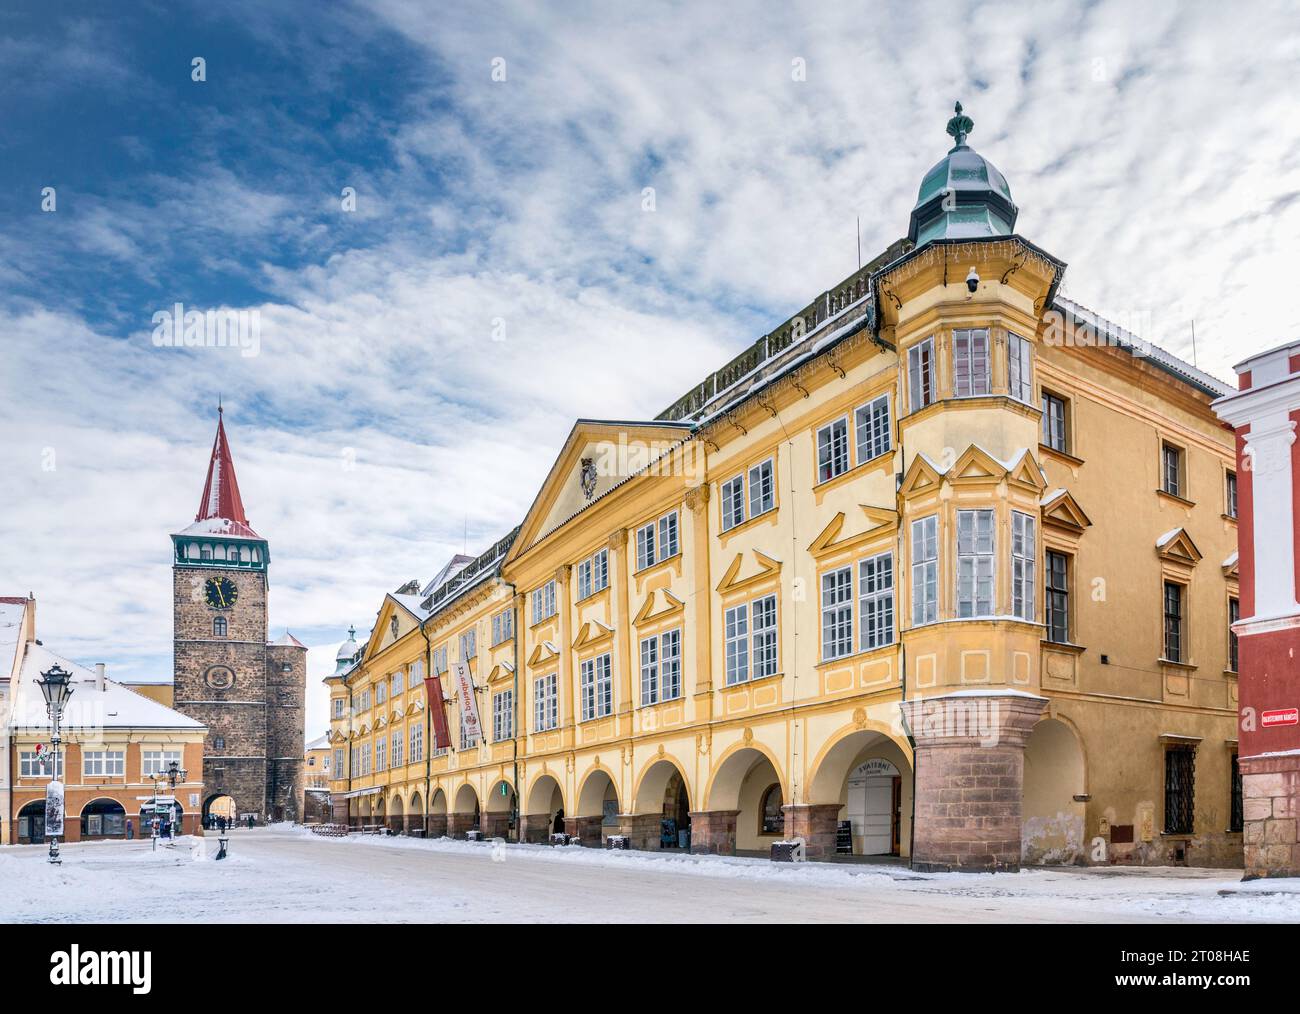 Valdicka Gate, 1568, and Zamek (Palace, Chateau) in winter, at Valdštejnské náměstí in Jičín, Czech Republic Stock Photo